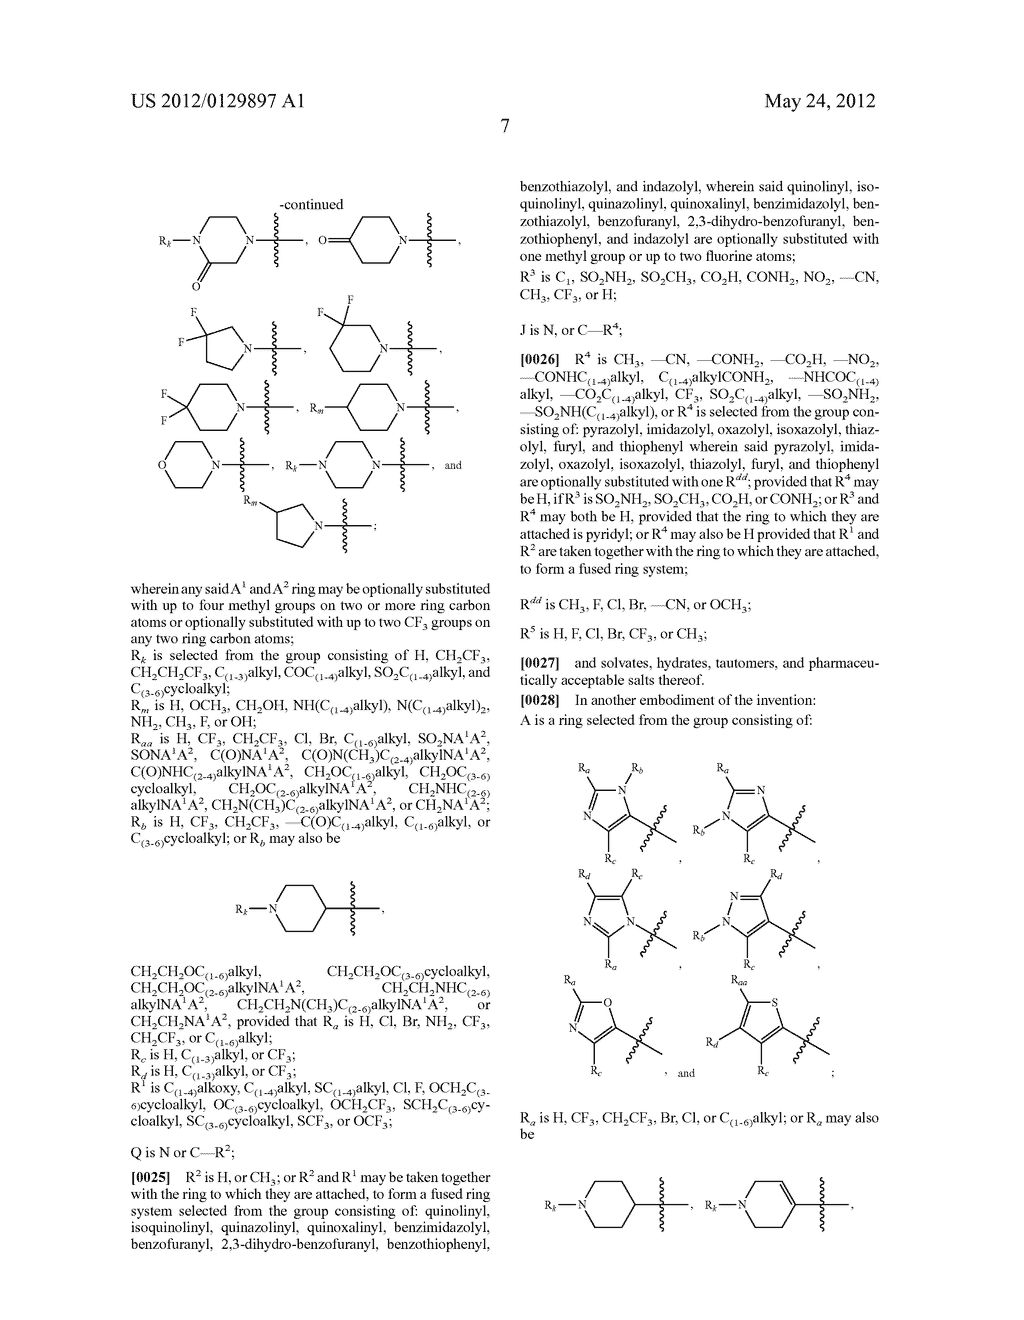 BIS HETEROARYL INHIBITORS OF PRO-MATRIX METALLOPROTEINASE ACTIVATION - diagram, schematic, and image 11